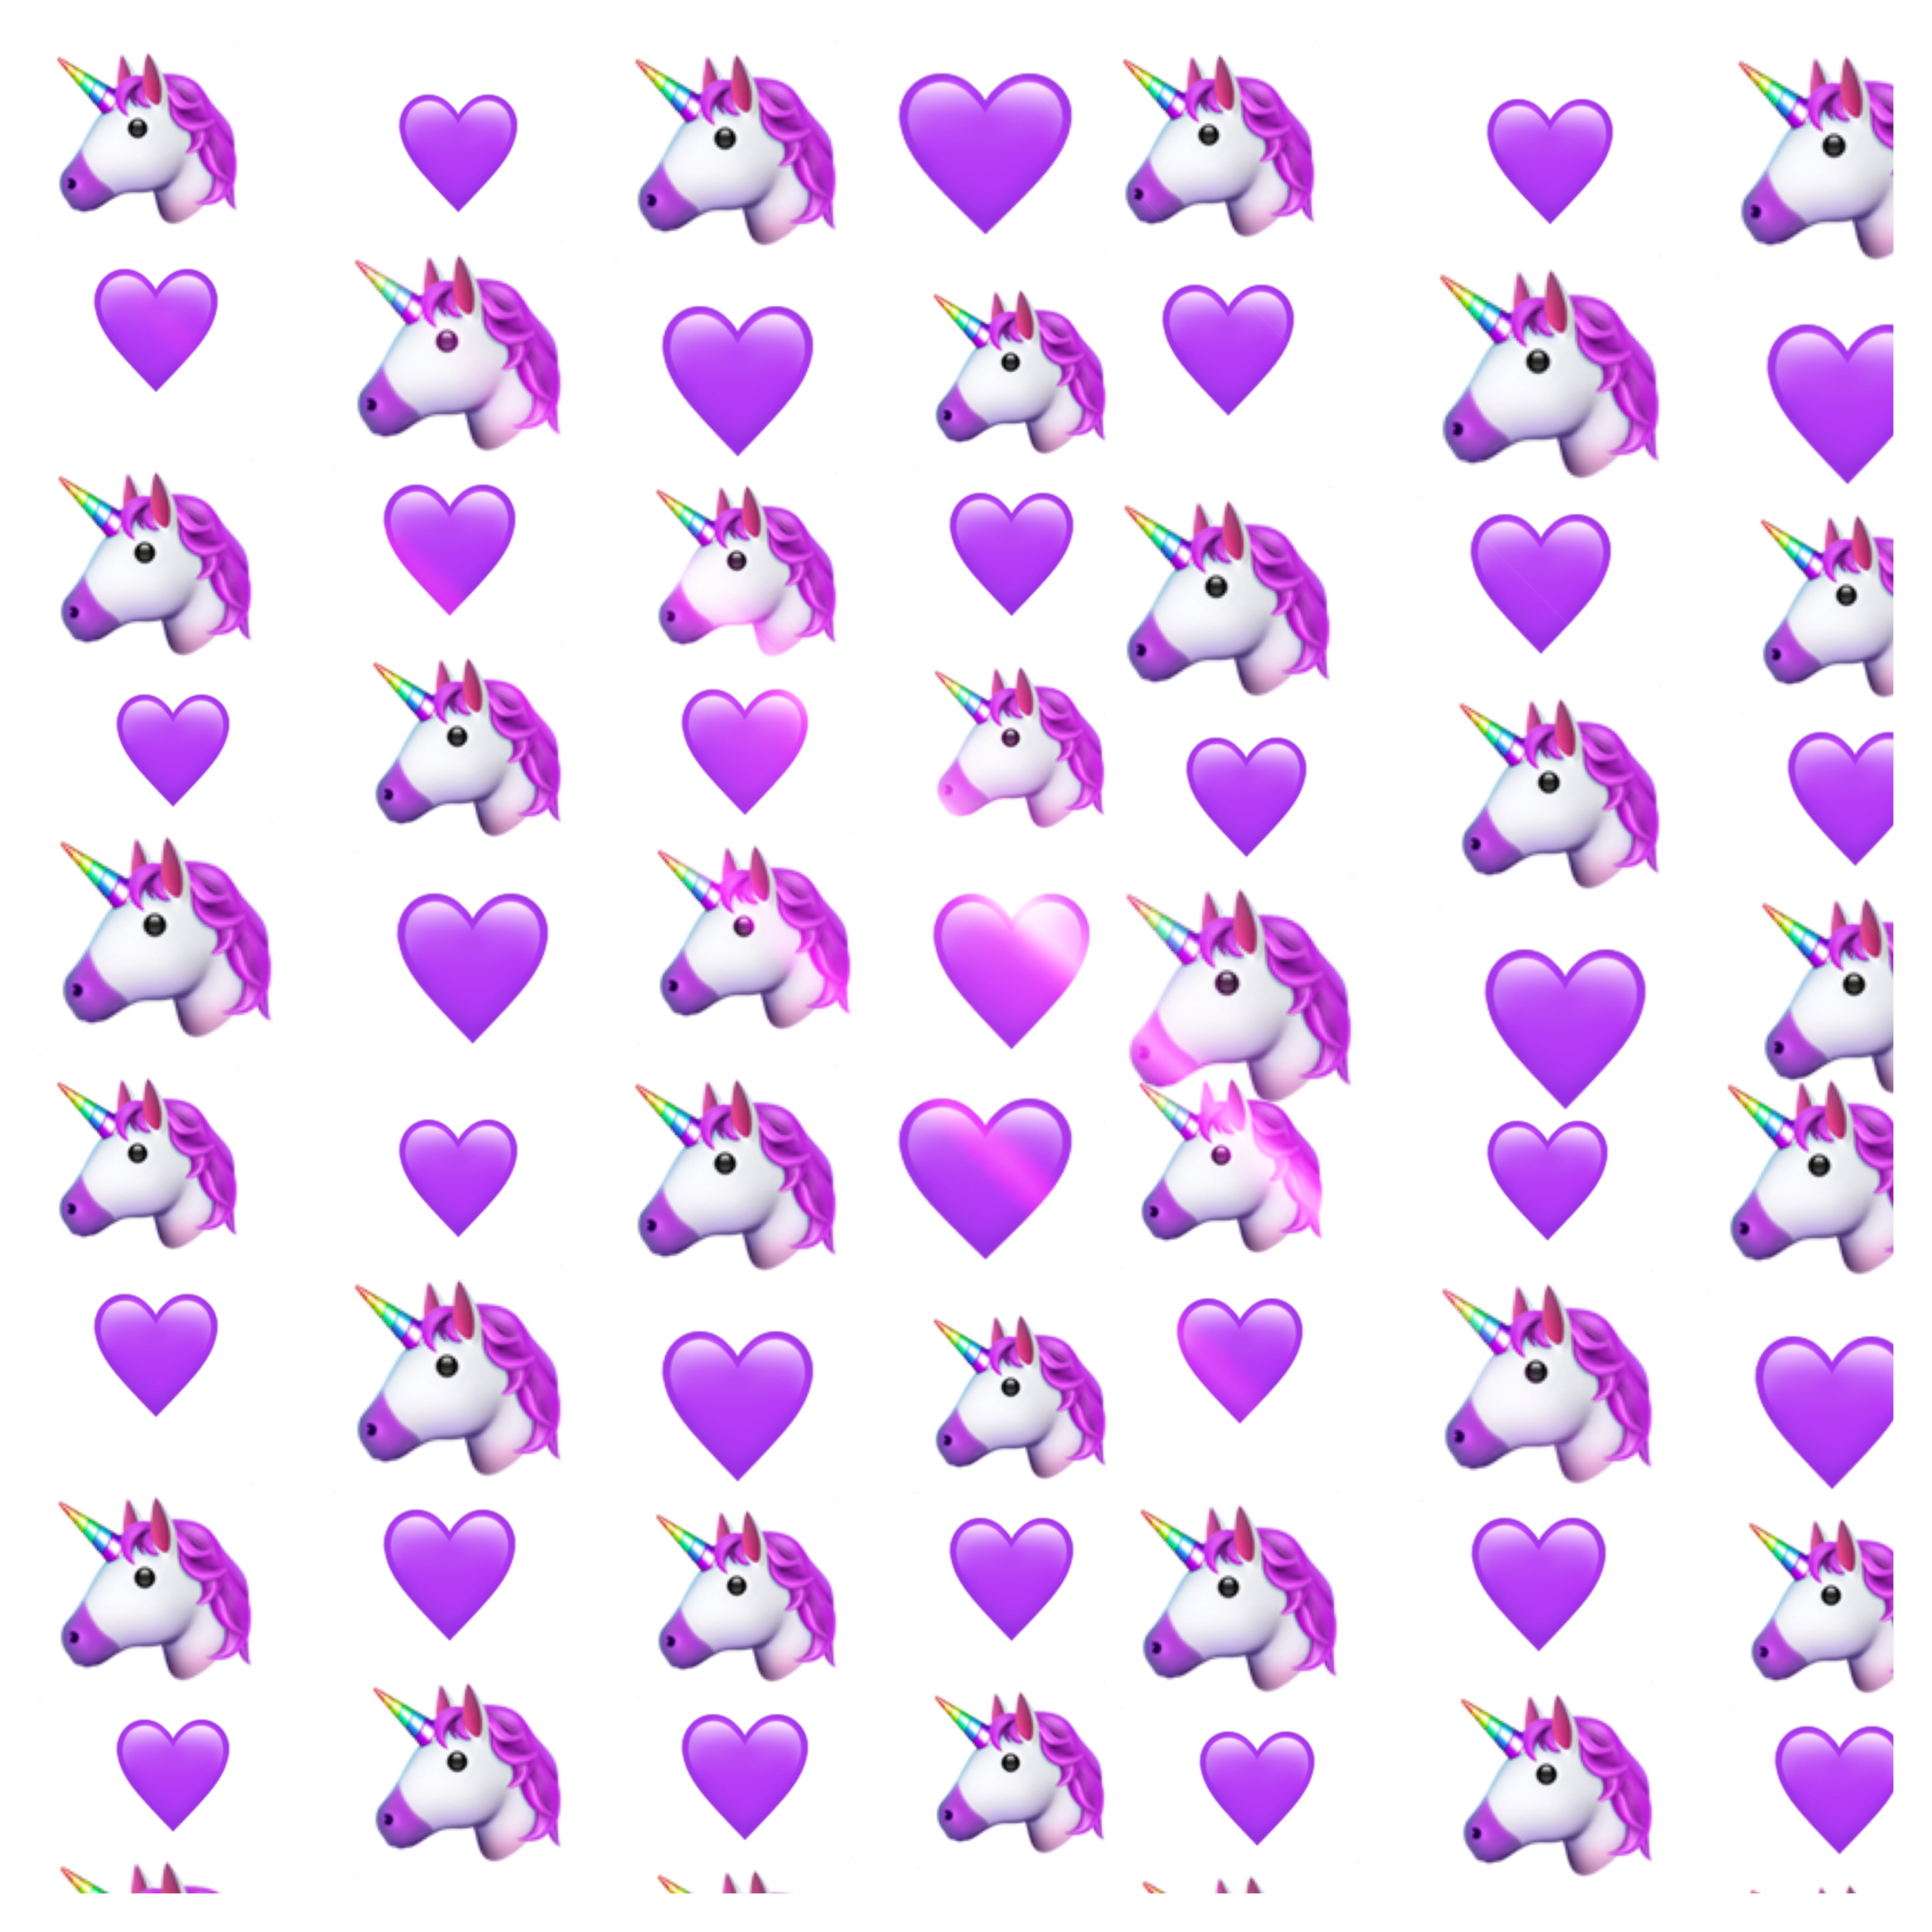 Много фиолетовых сердечек